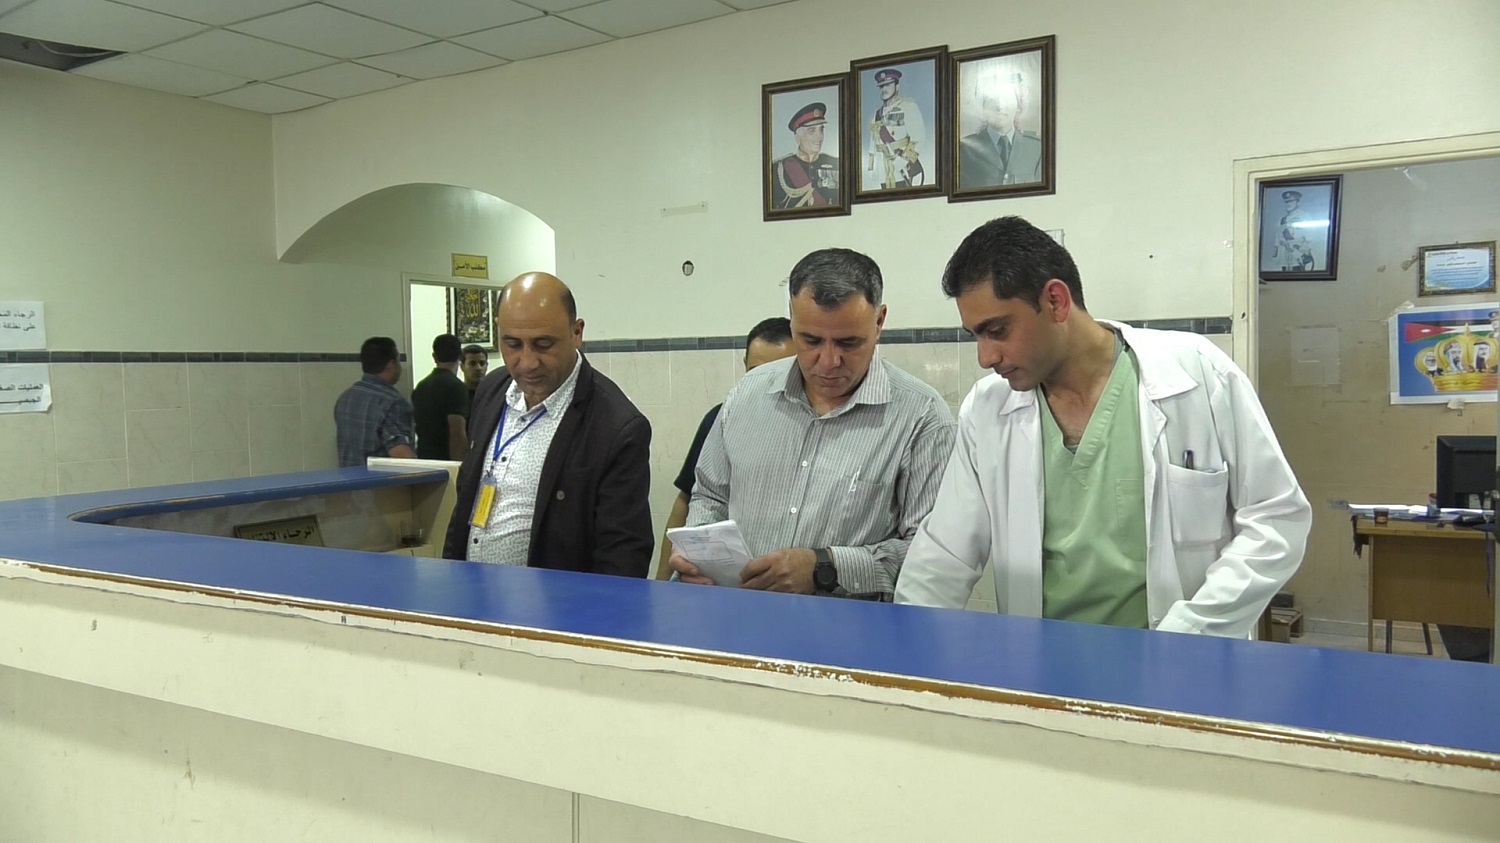 وصل عدد الحالات التي تعامل معها المستشفى الميداني الأردني في غزة منذ بدء عمله قبل 10 سنوات إلى نحو 35 ألف مراجع. (المملكة)